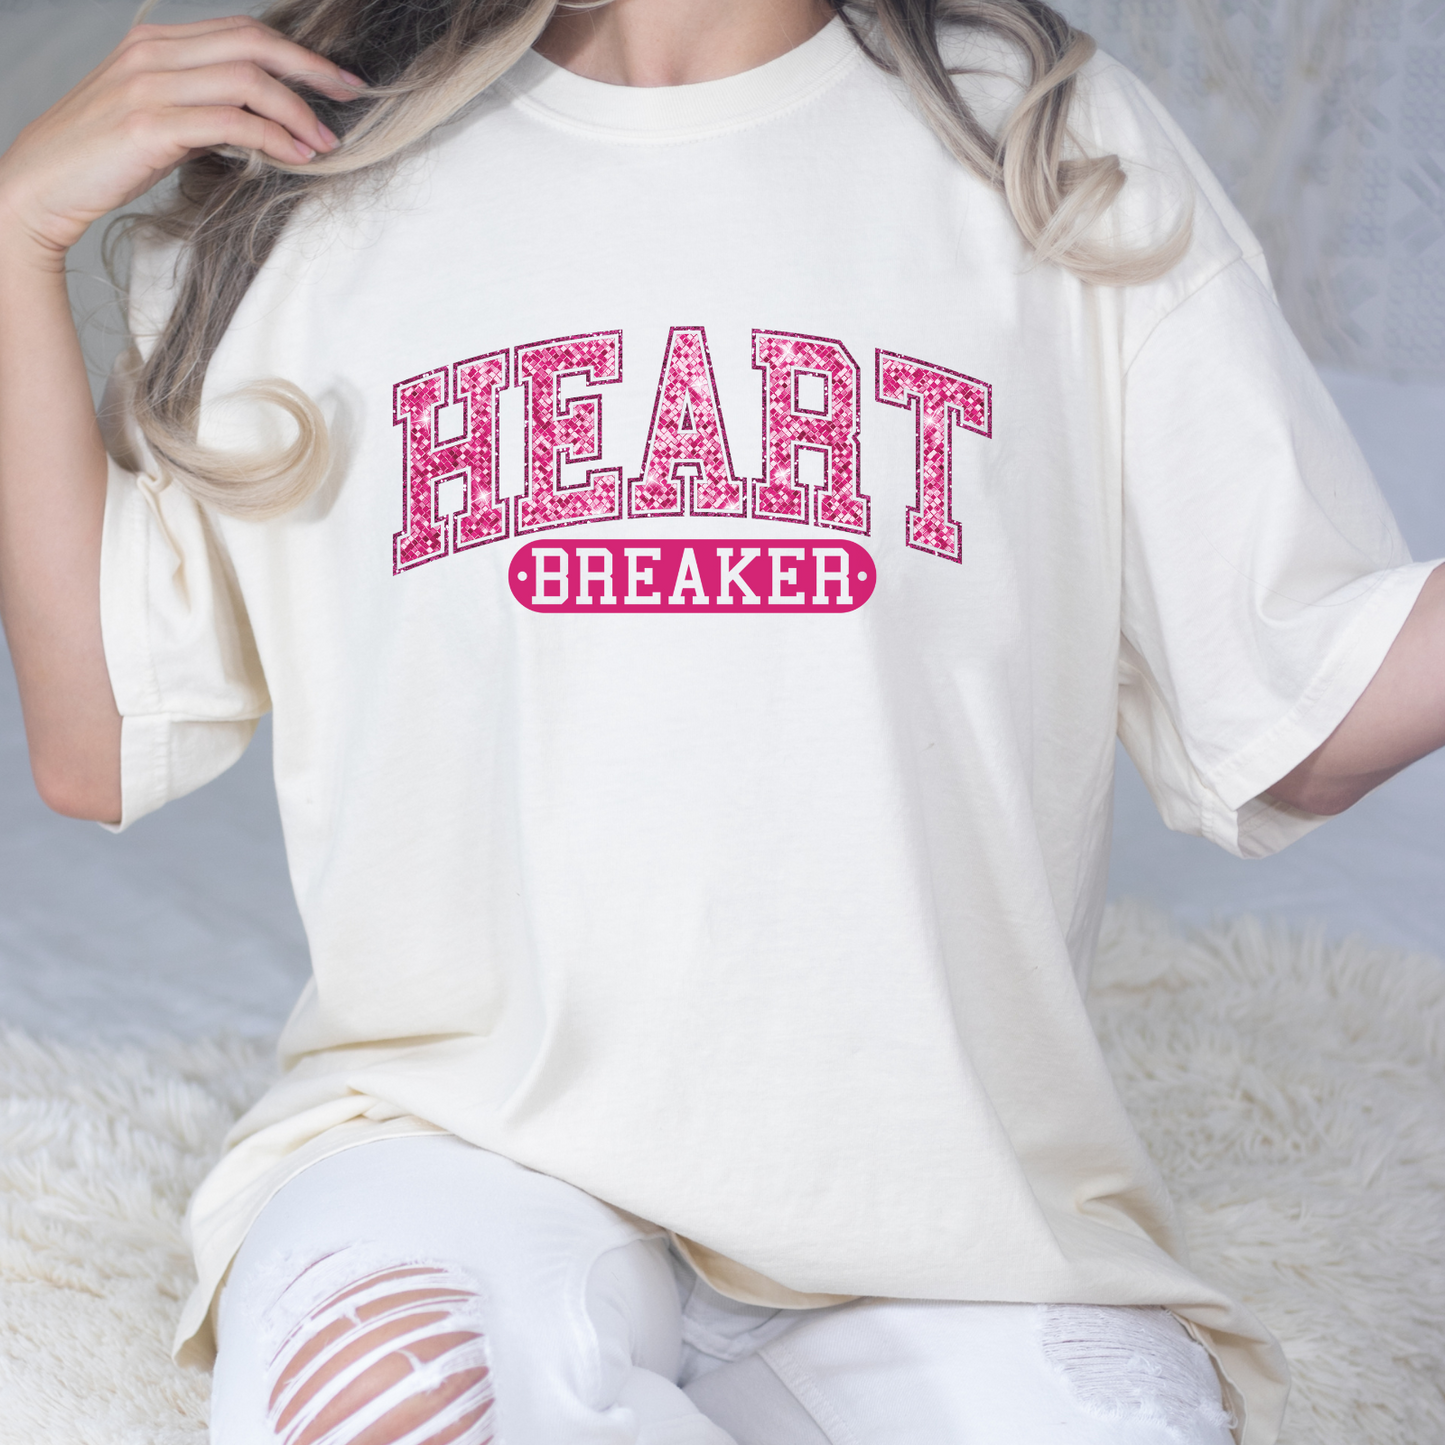 HEART BREAKER